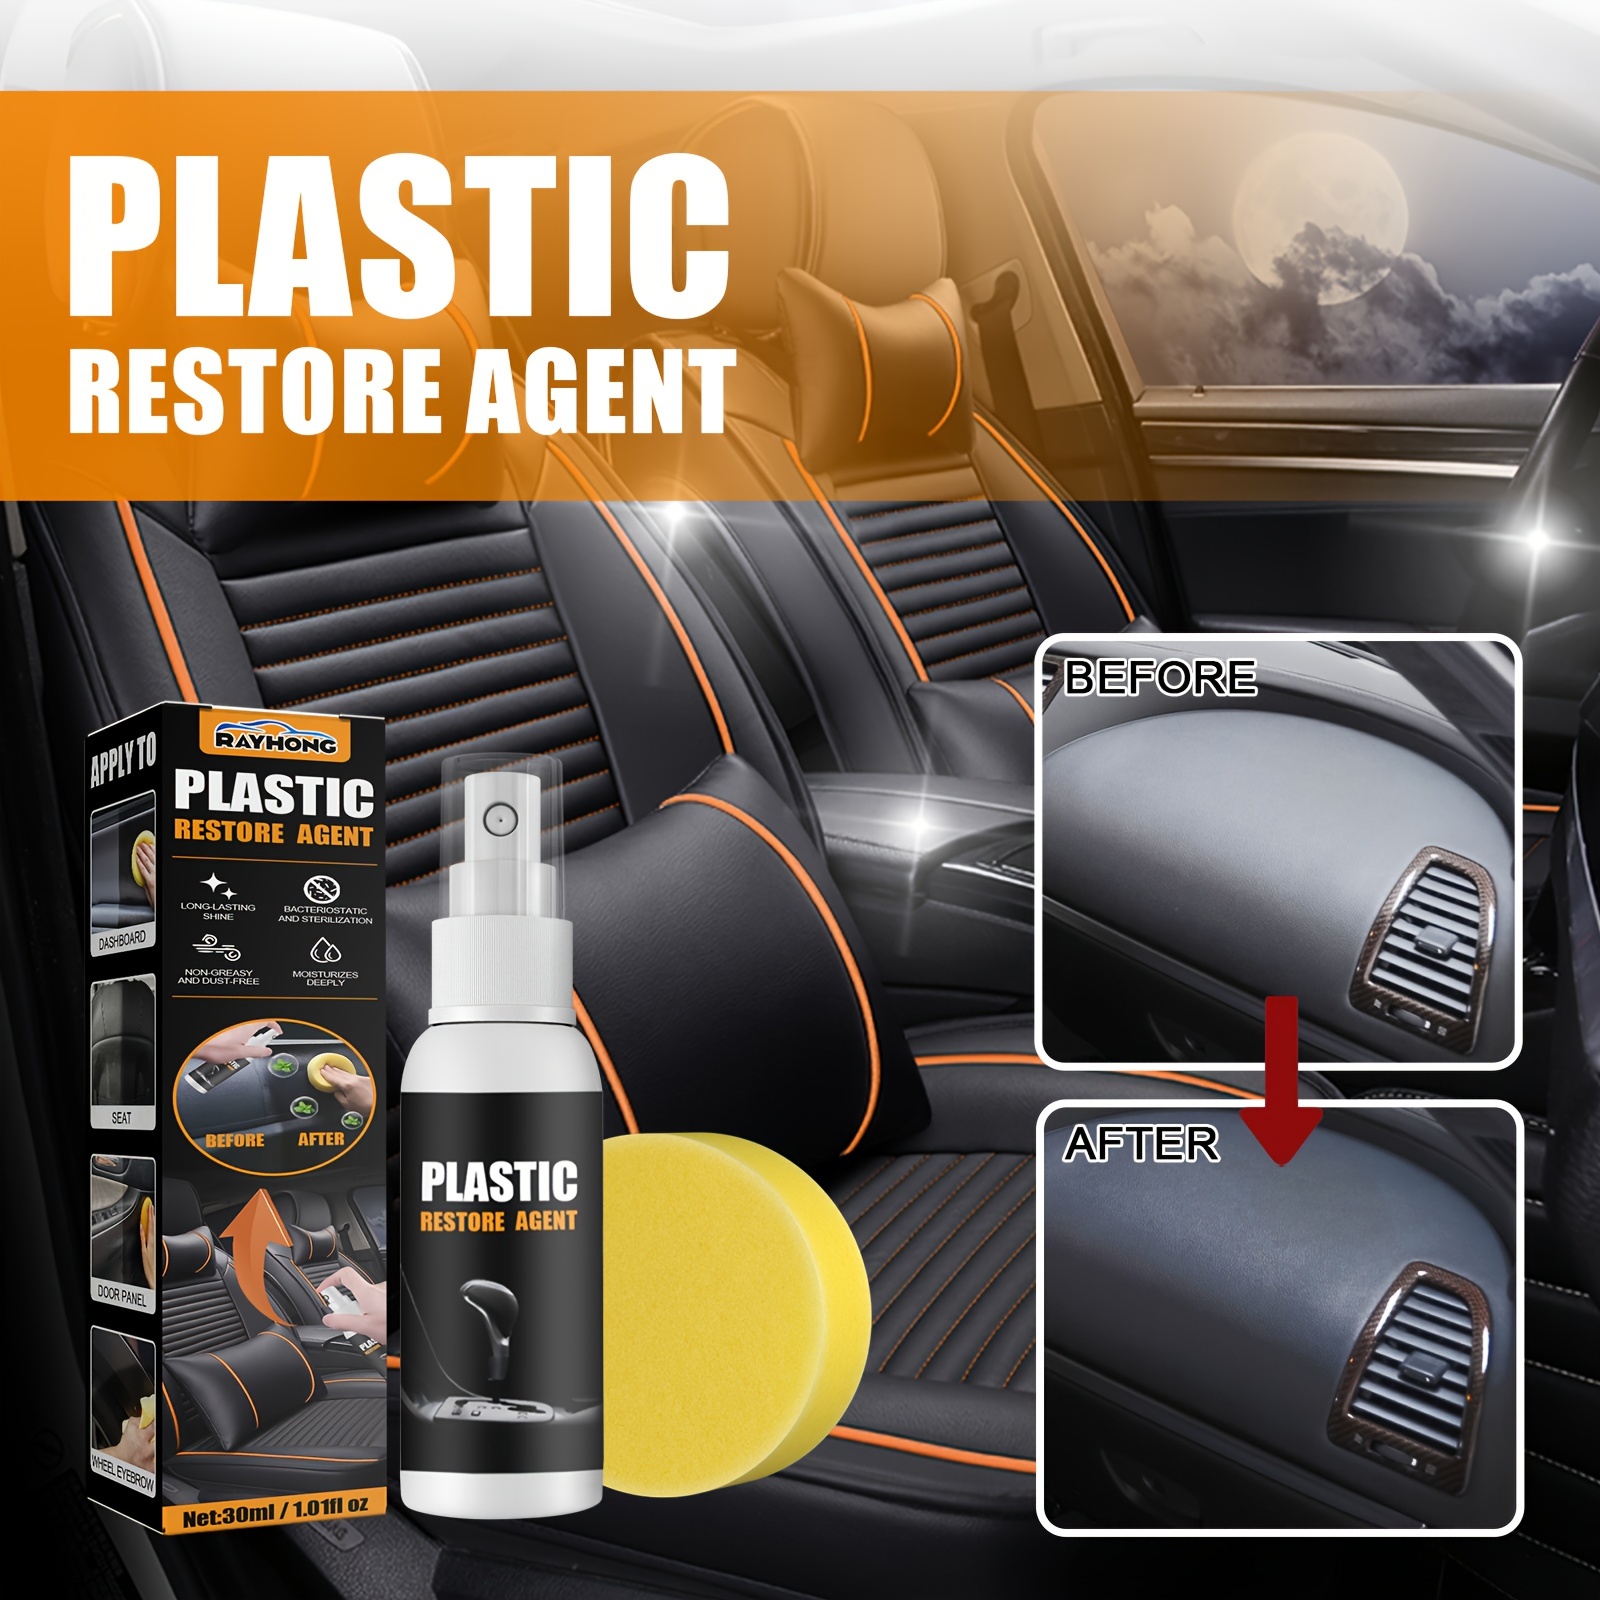 Car Plastic Plating Refurbishing Agent - rapidcarto